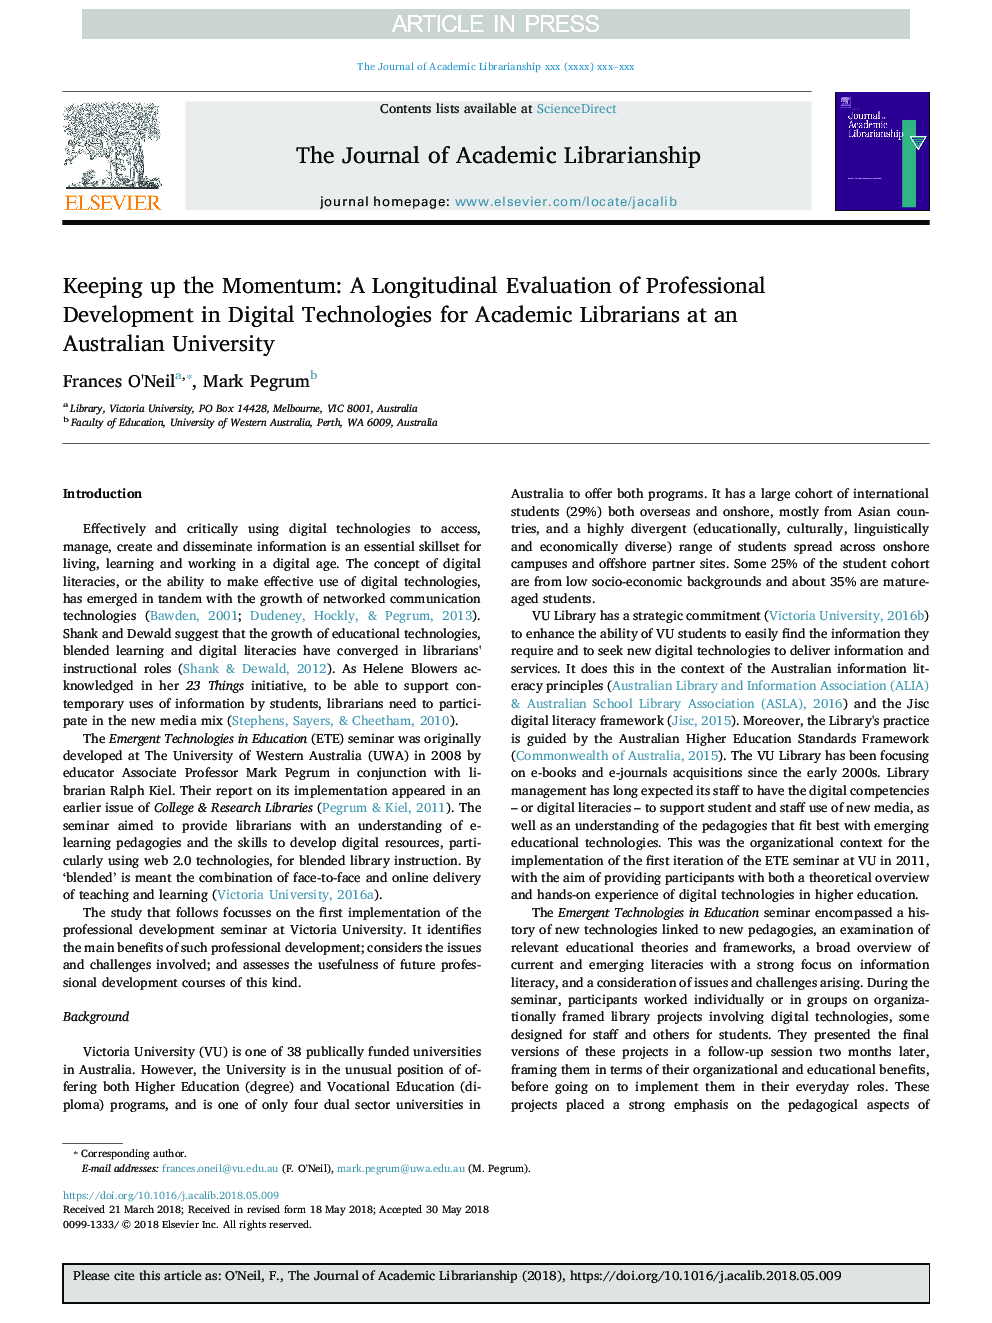 نگهداری امواج: ارزیابی طولی توسعه حرفه ای در فن آوری های دیجیتال برای کتابداران دانشگاهی در یک دانشگاه استرالیا 